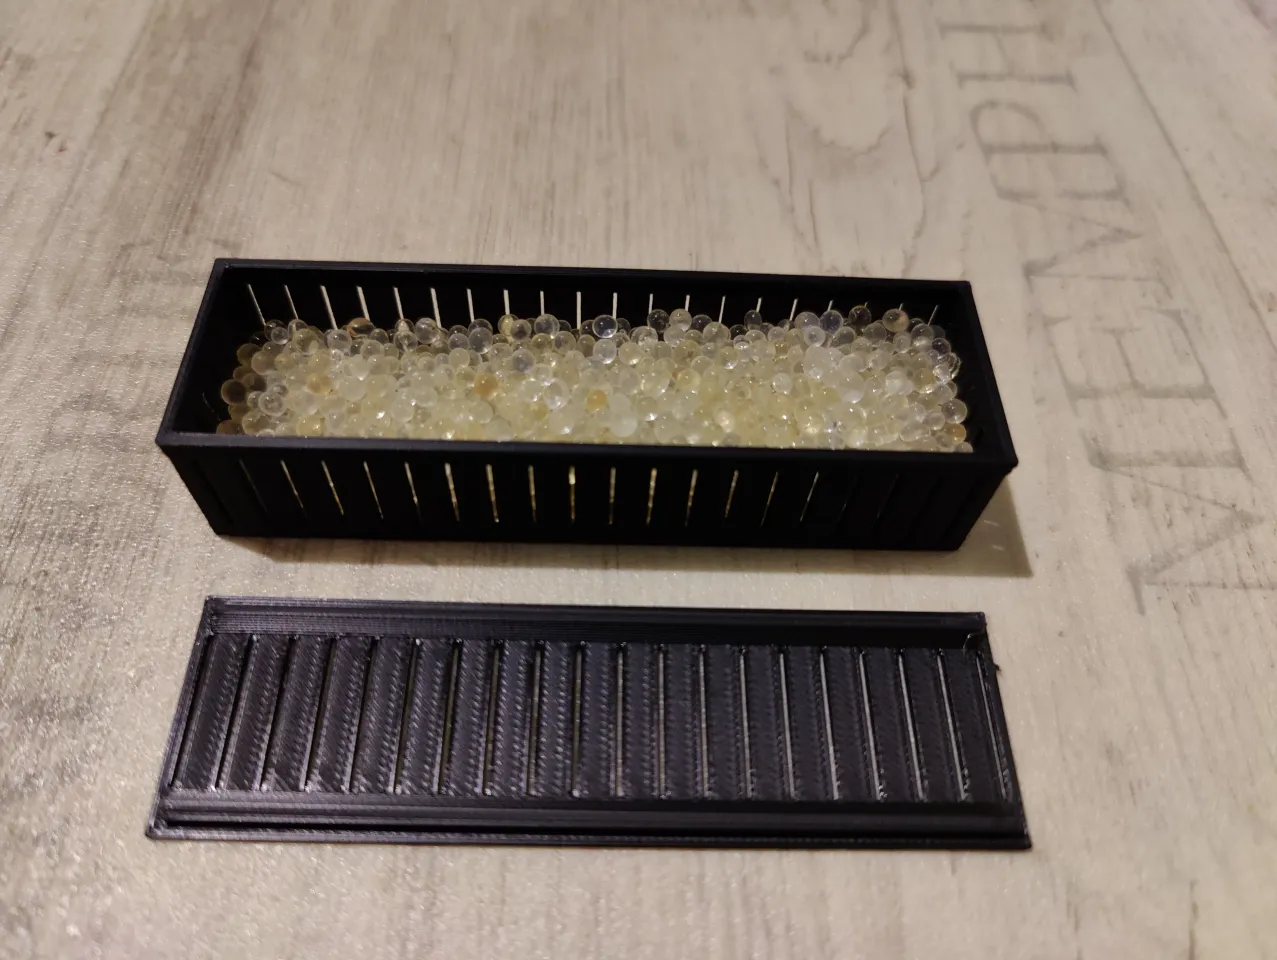 Anleitung: 3D gedruckte Silica Gel Box für die ANYBOX Version 2023